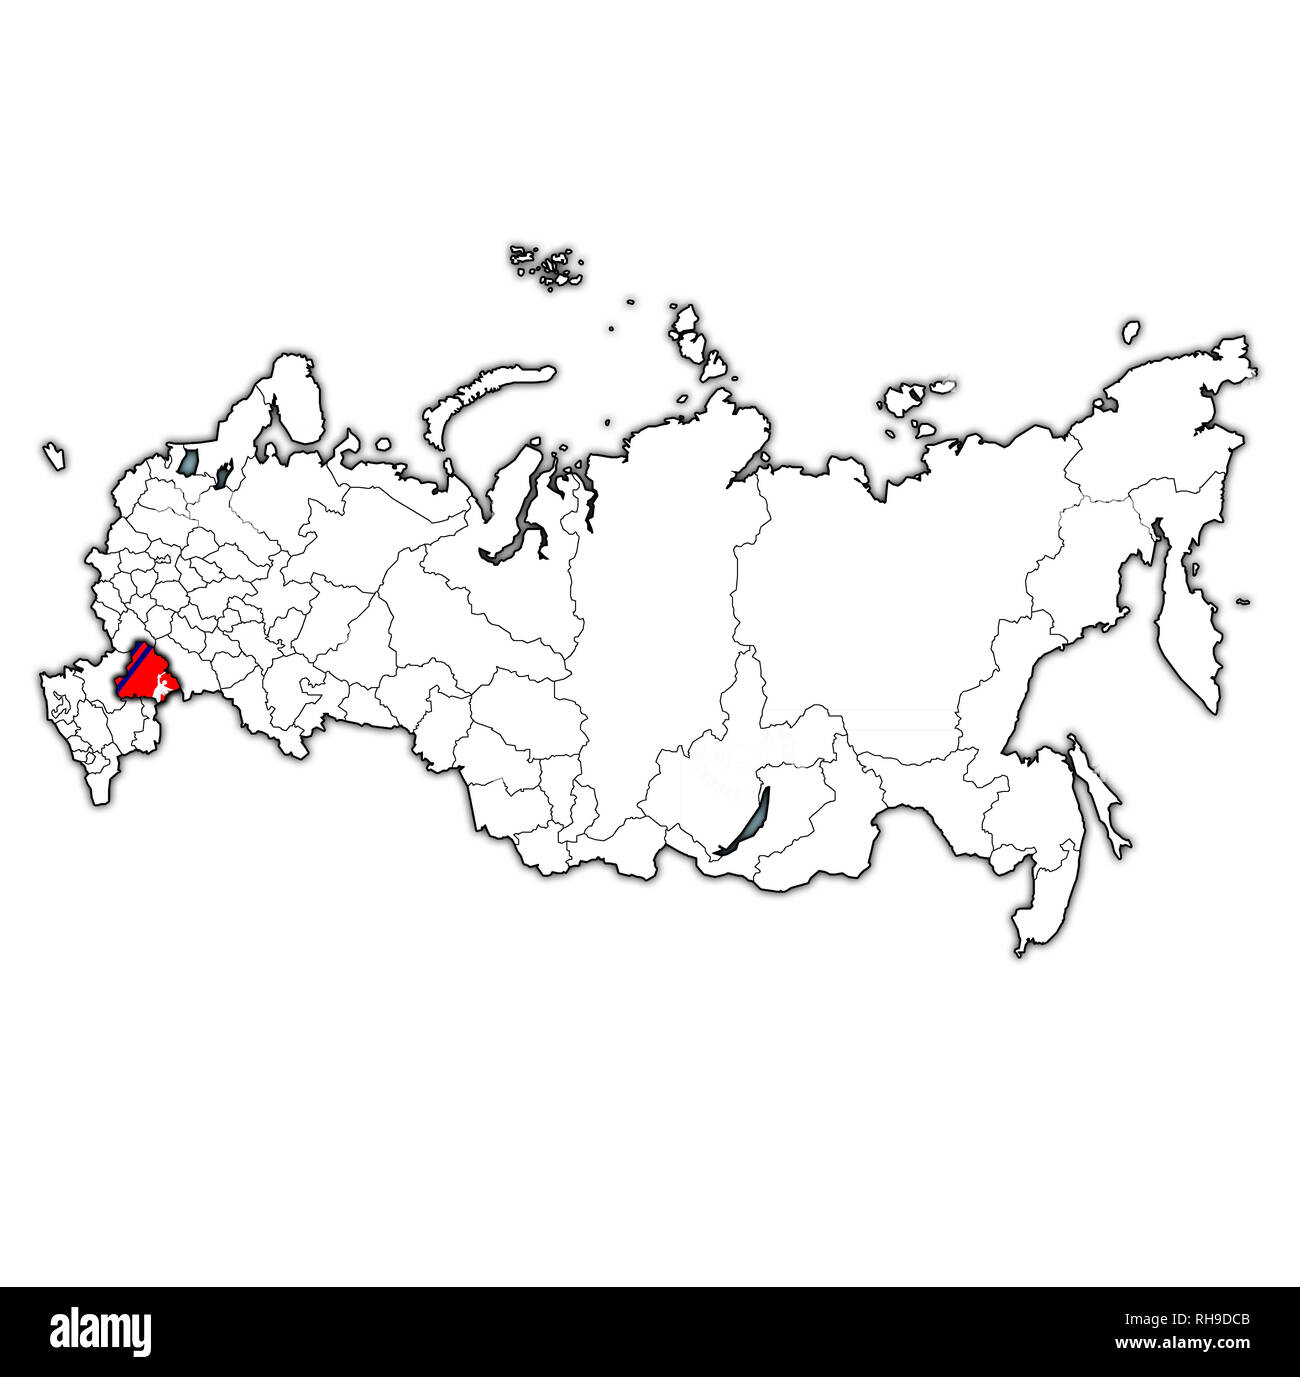 Emblem der Oblast Wolgograd auf Karte mit administrativen Abteilungen und Grenzen Russlands Stockfoto